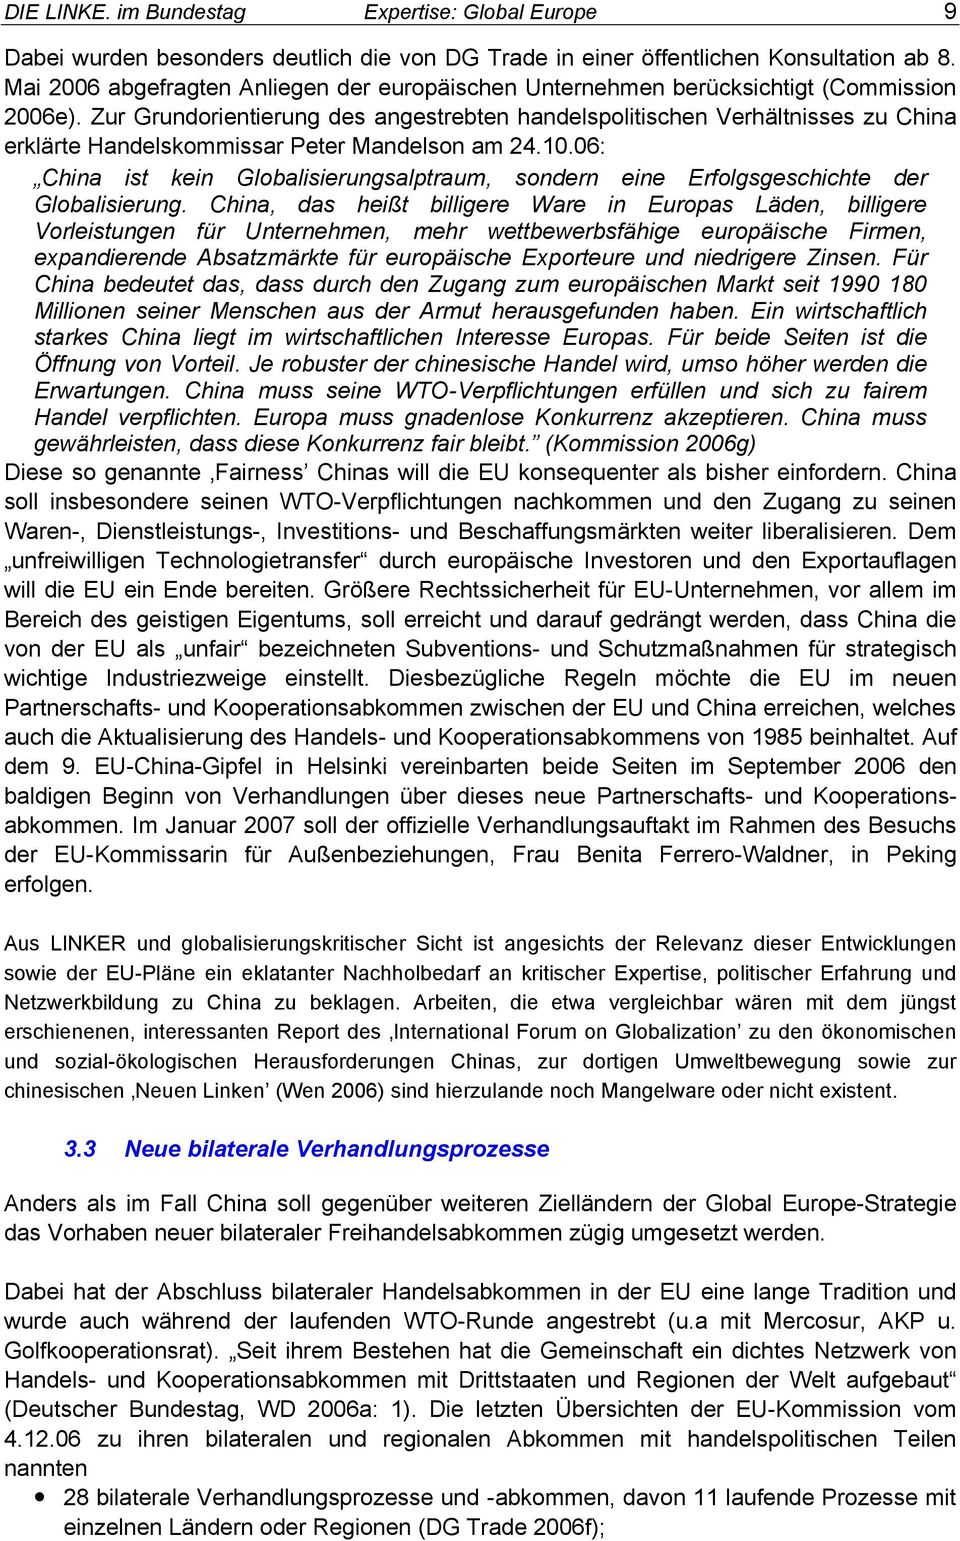 Zur Grundorientierung des angestrebten handelspolitischen Verhältnisses zu China erklärte Handelskommissar Peter Mandelson am 24.10.